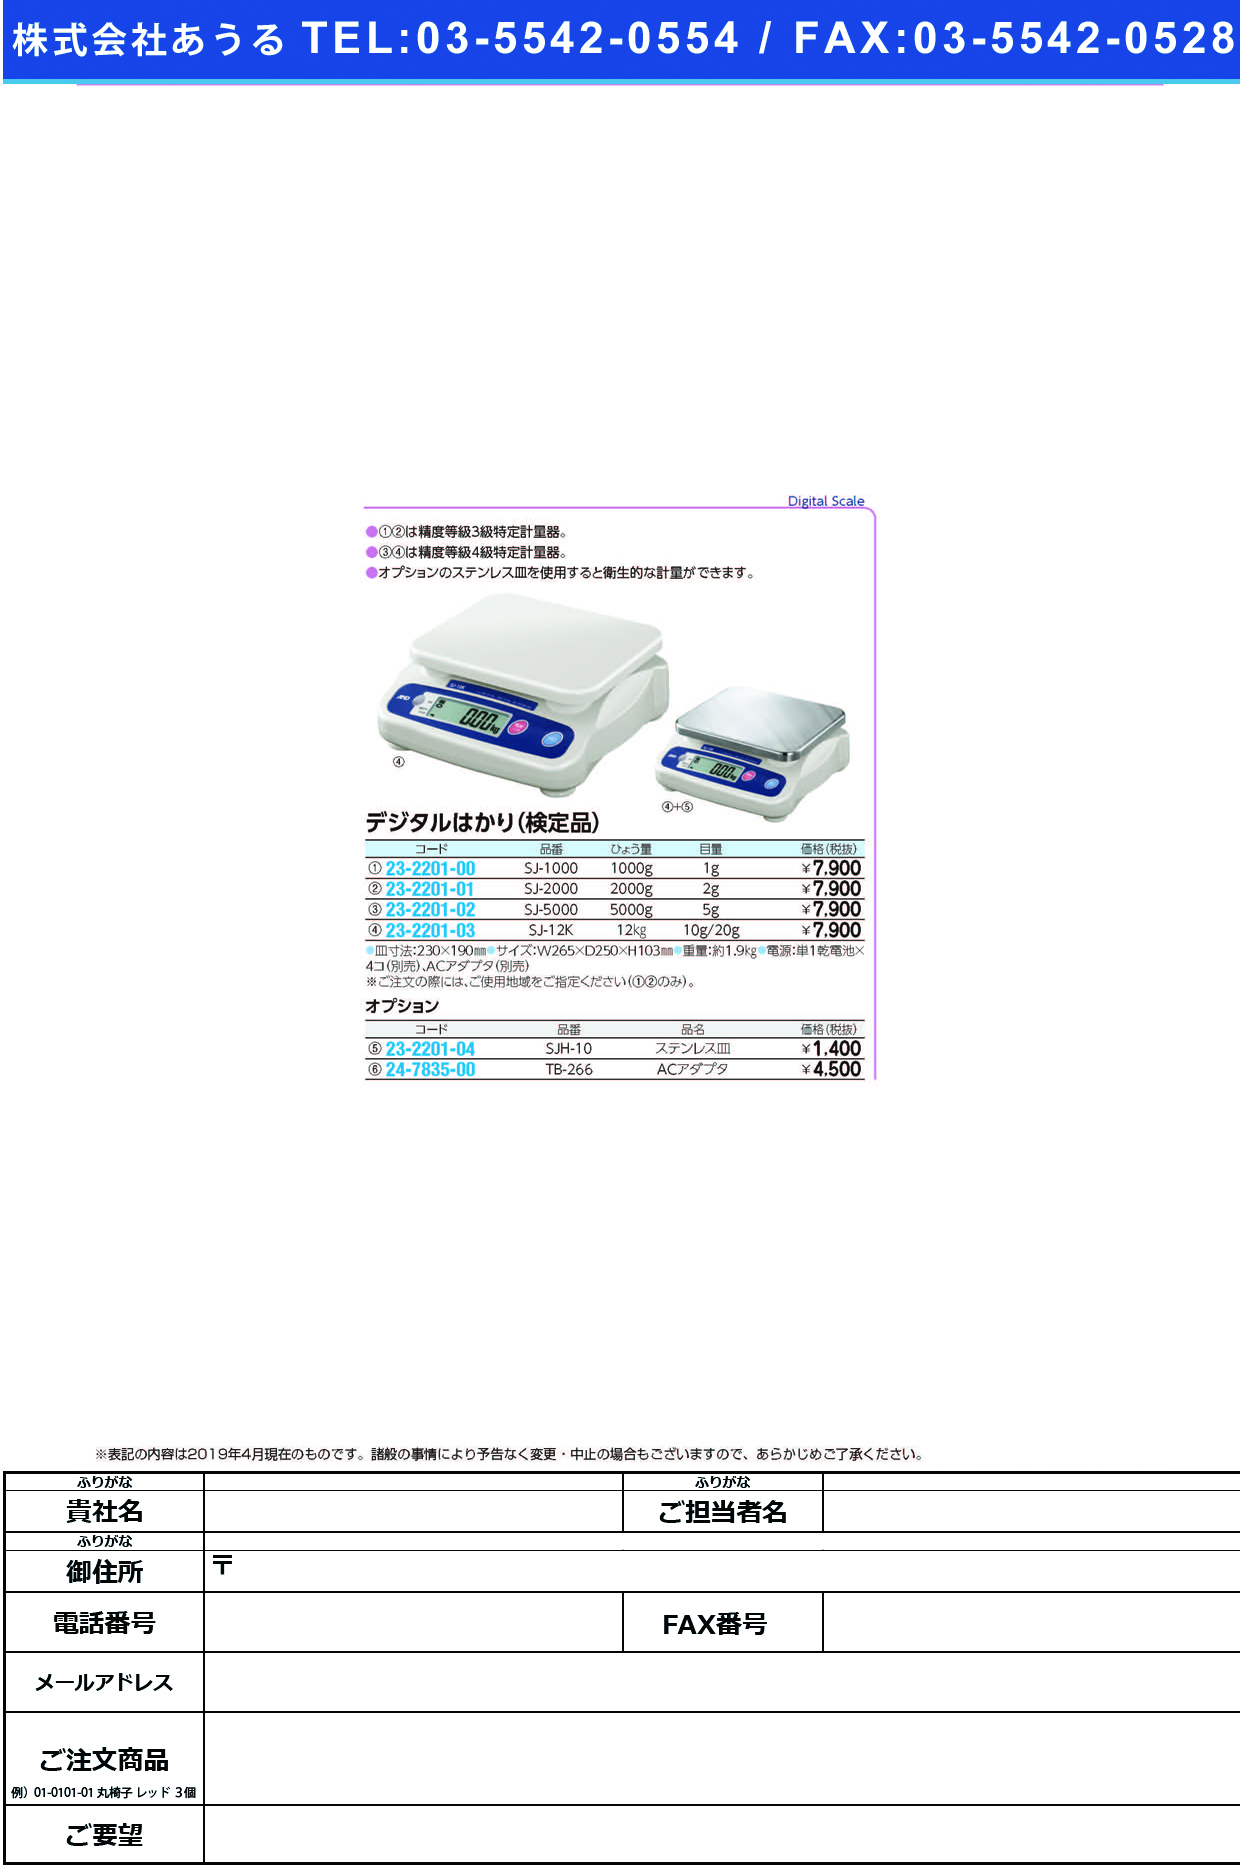 (23-2201-00)デジタルはかり（検定品） SJ-1000 ﾃﾞｼﾞﾀﾙﾊｶﾘ(ｹﾝﾃｲﾋﾝ)【1台単位】【2019年カタログ商品】